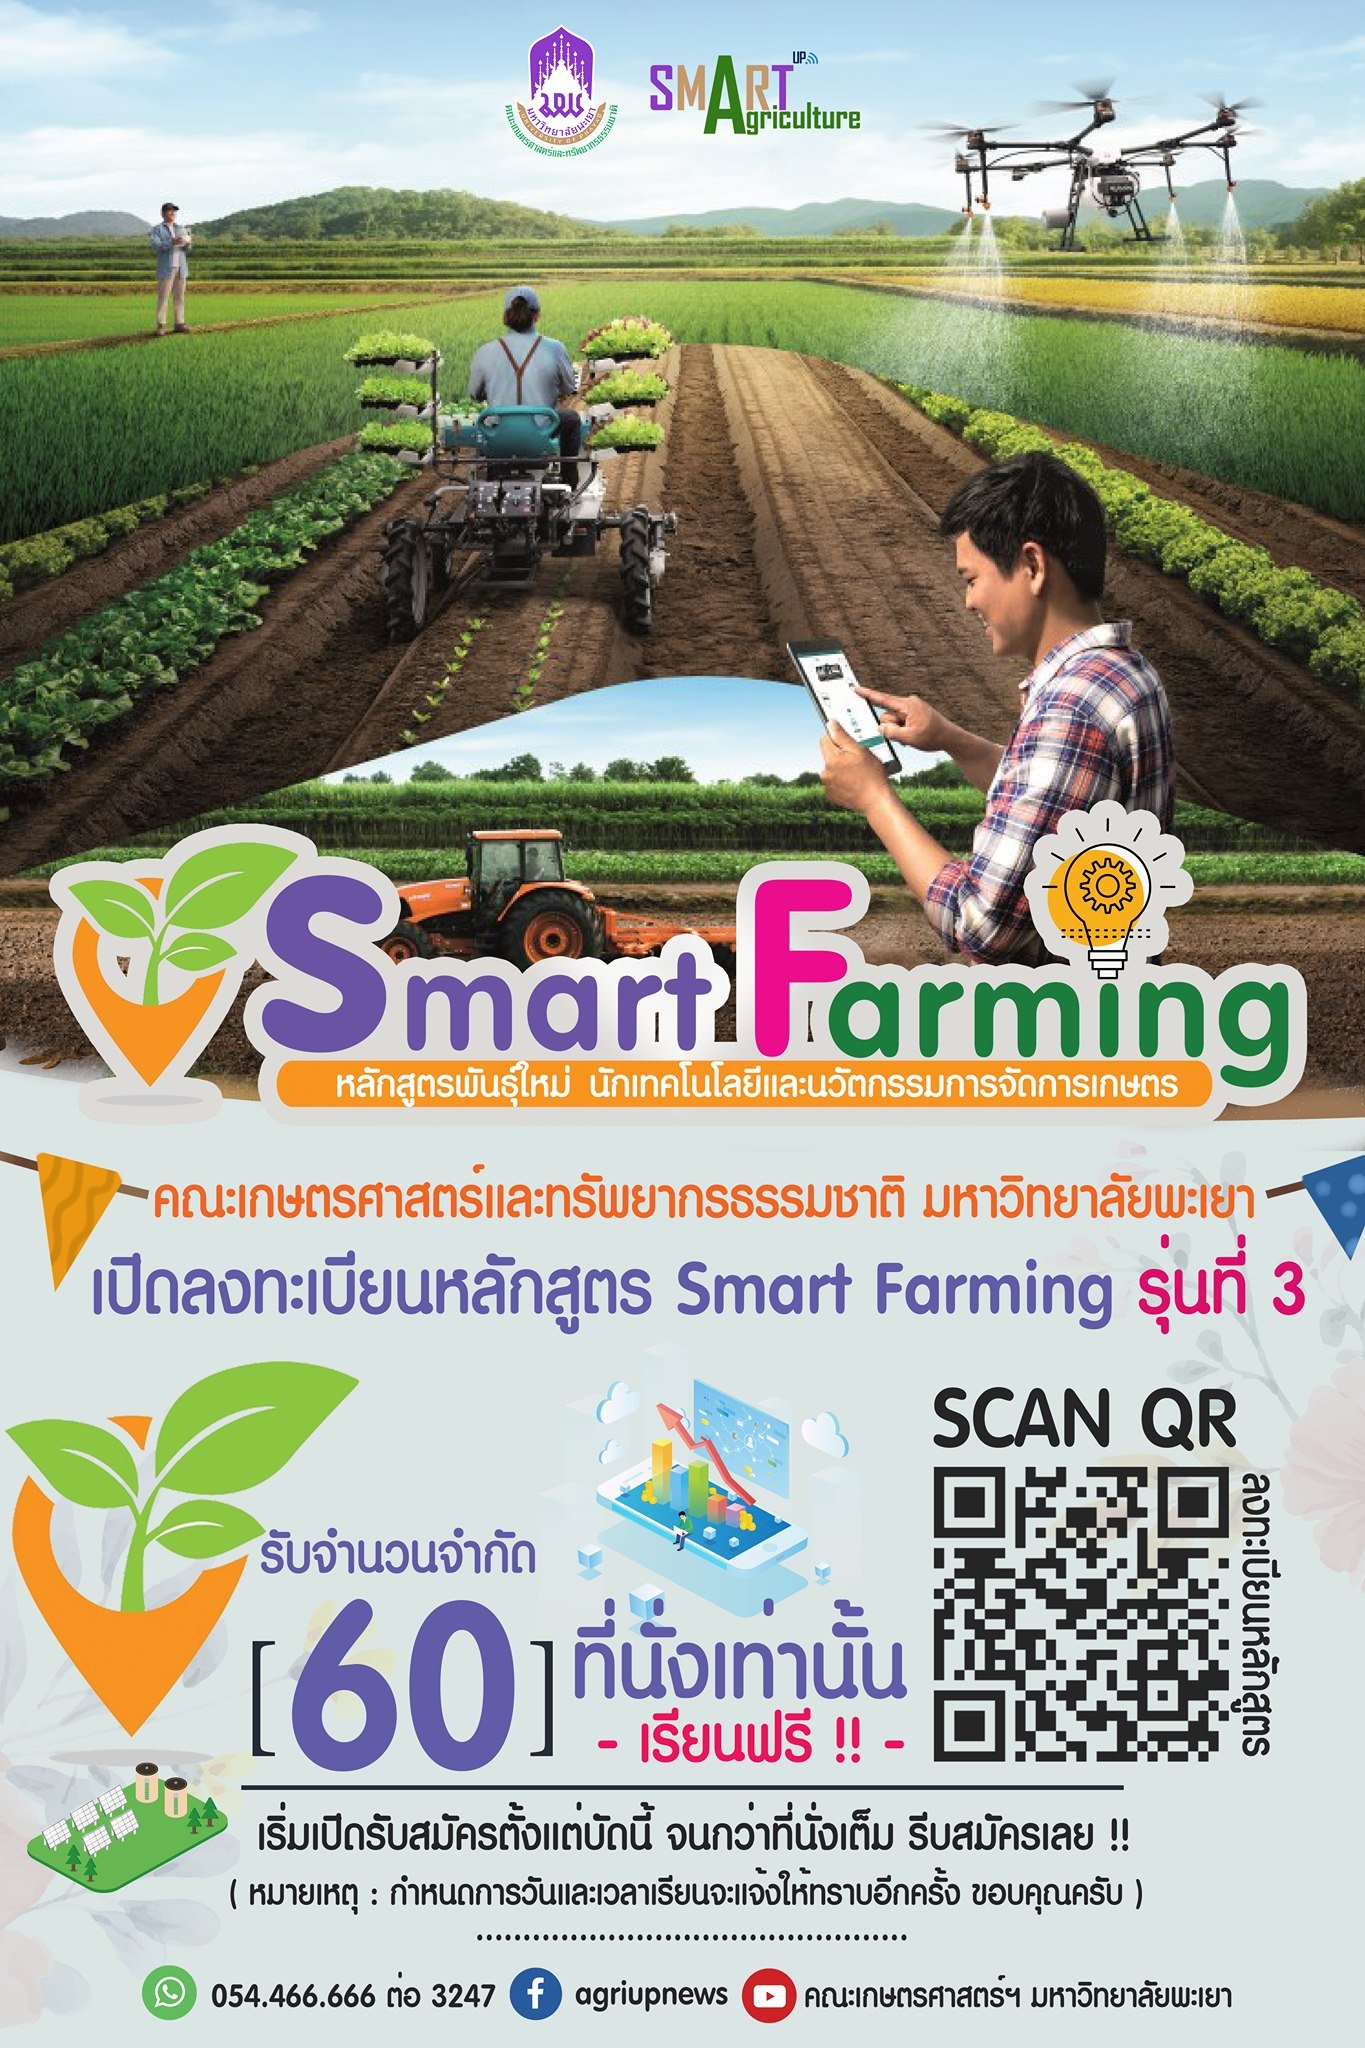 เปิดรับสมัครเรียนหลักสูตรพันธุ์ใหม่ รุ่นที่ 3 หลักสูตรนักเทคโนโลยีและนวัตกรรมการจัดการเกษตร Smart Farming ( รับจำนวน 60 ที่นั่ง เท่านั้น )